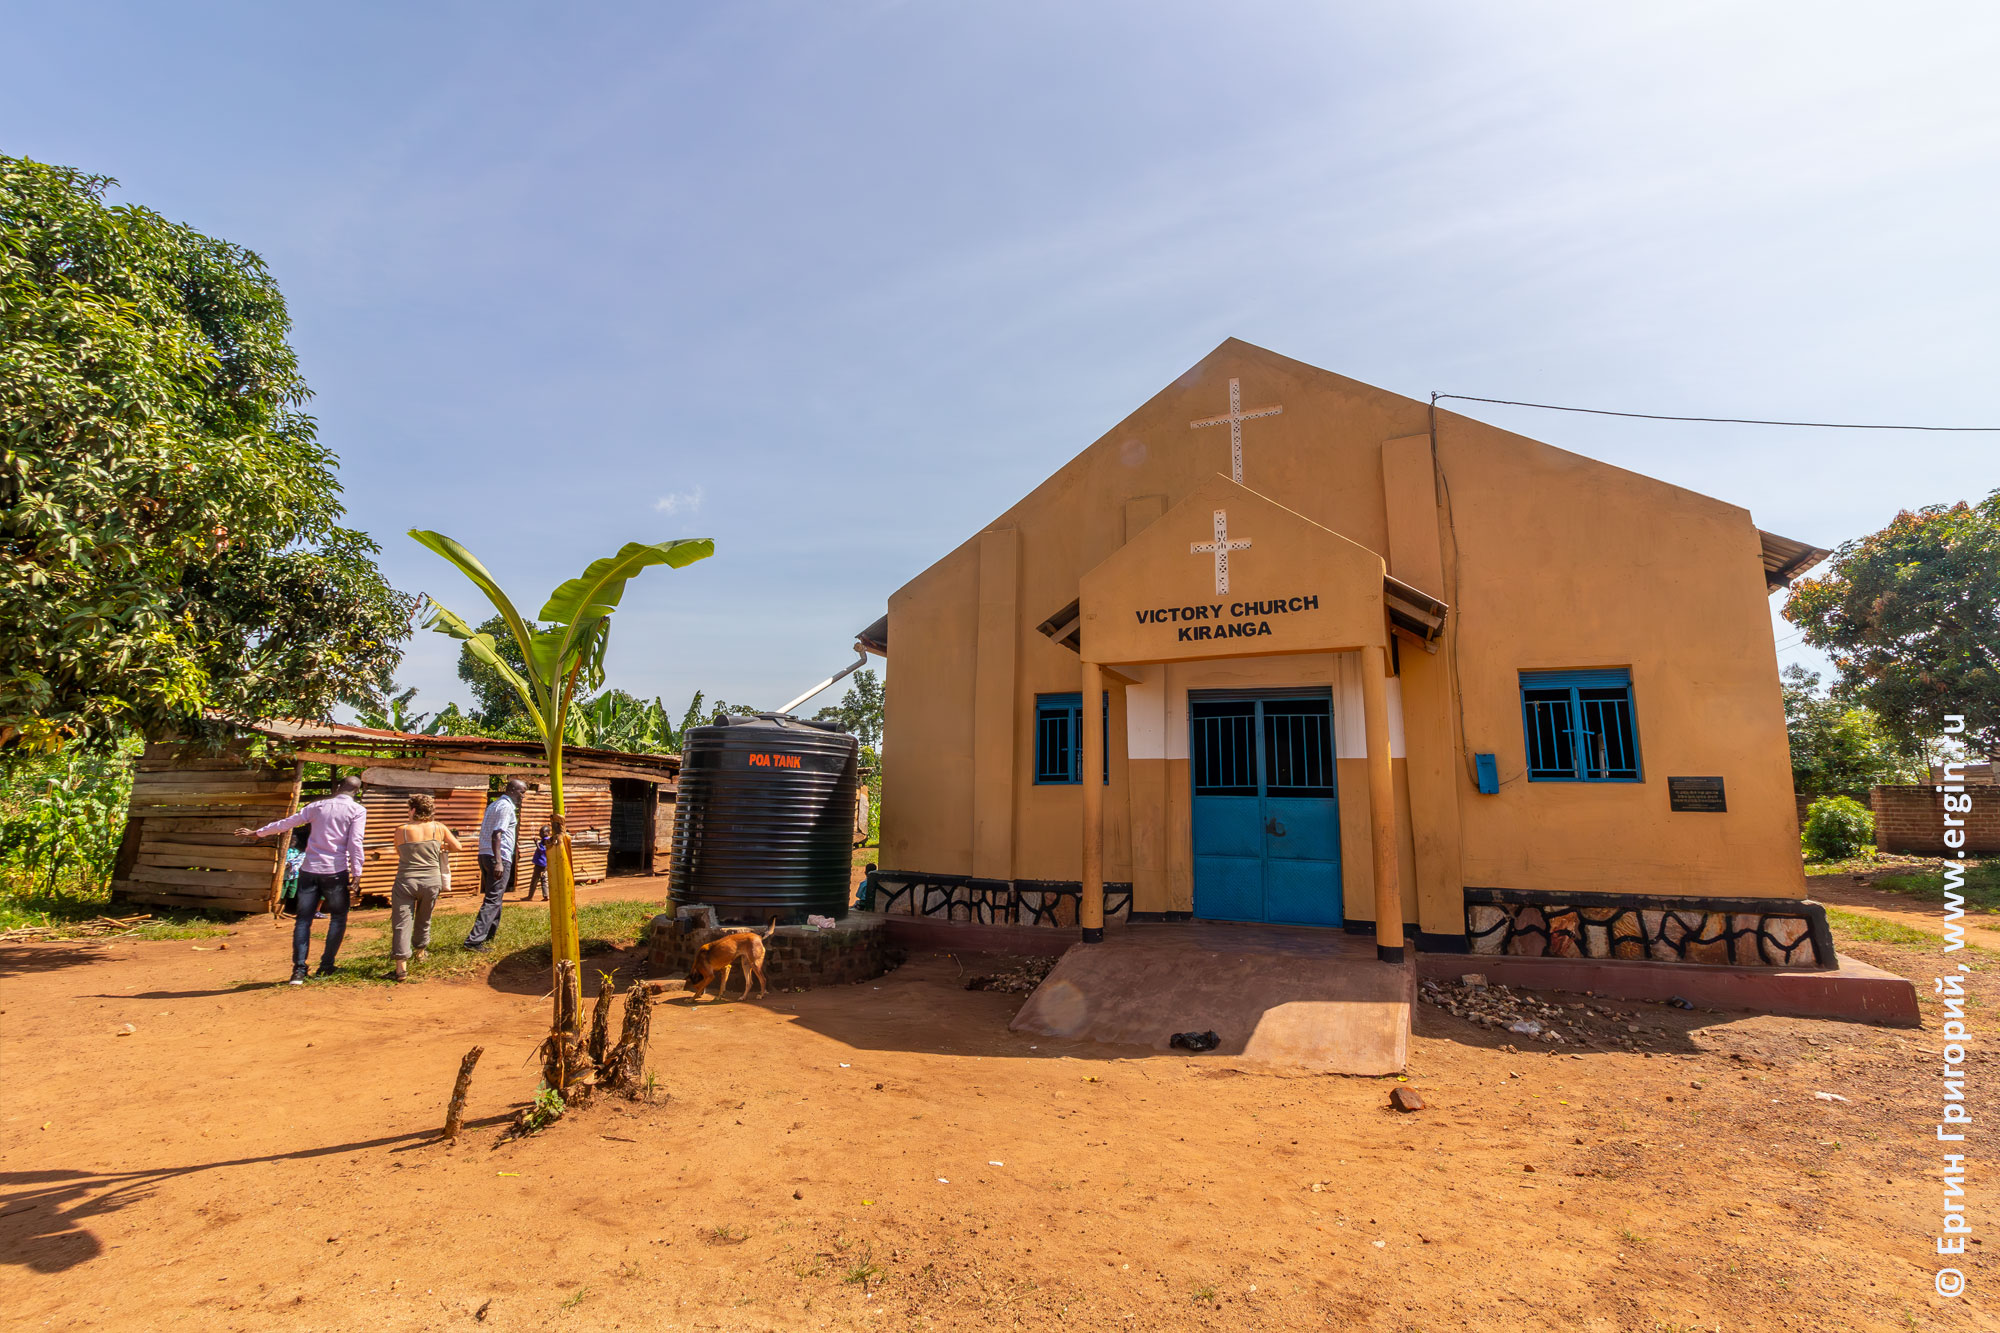 Церковь Victory Church Kiranga и угандийская школа рядом